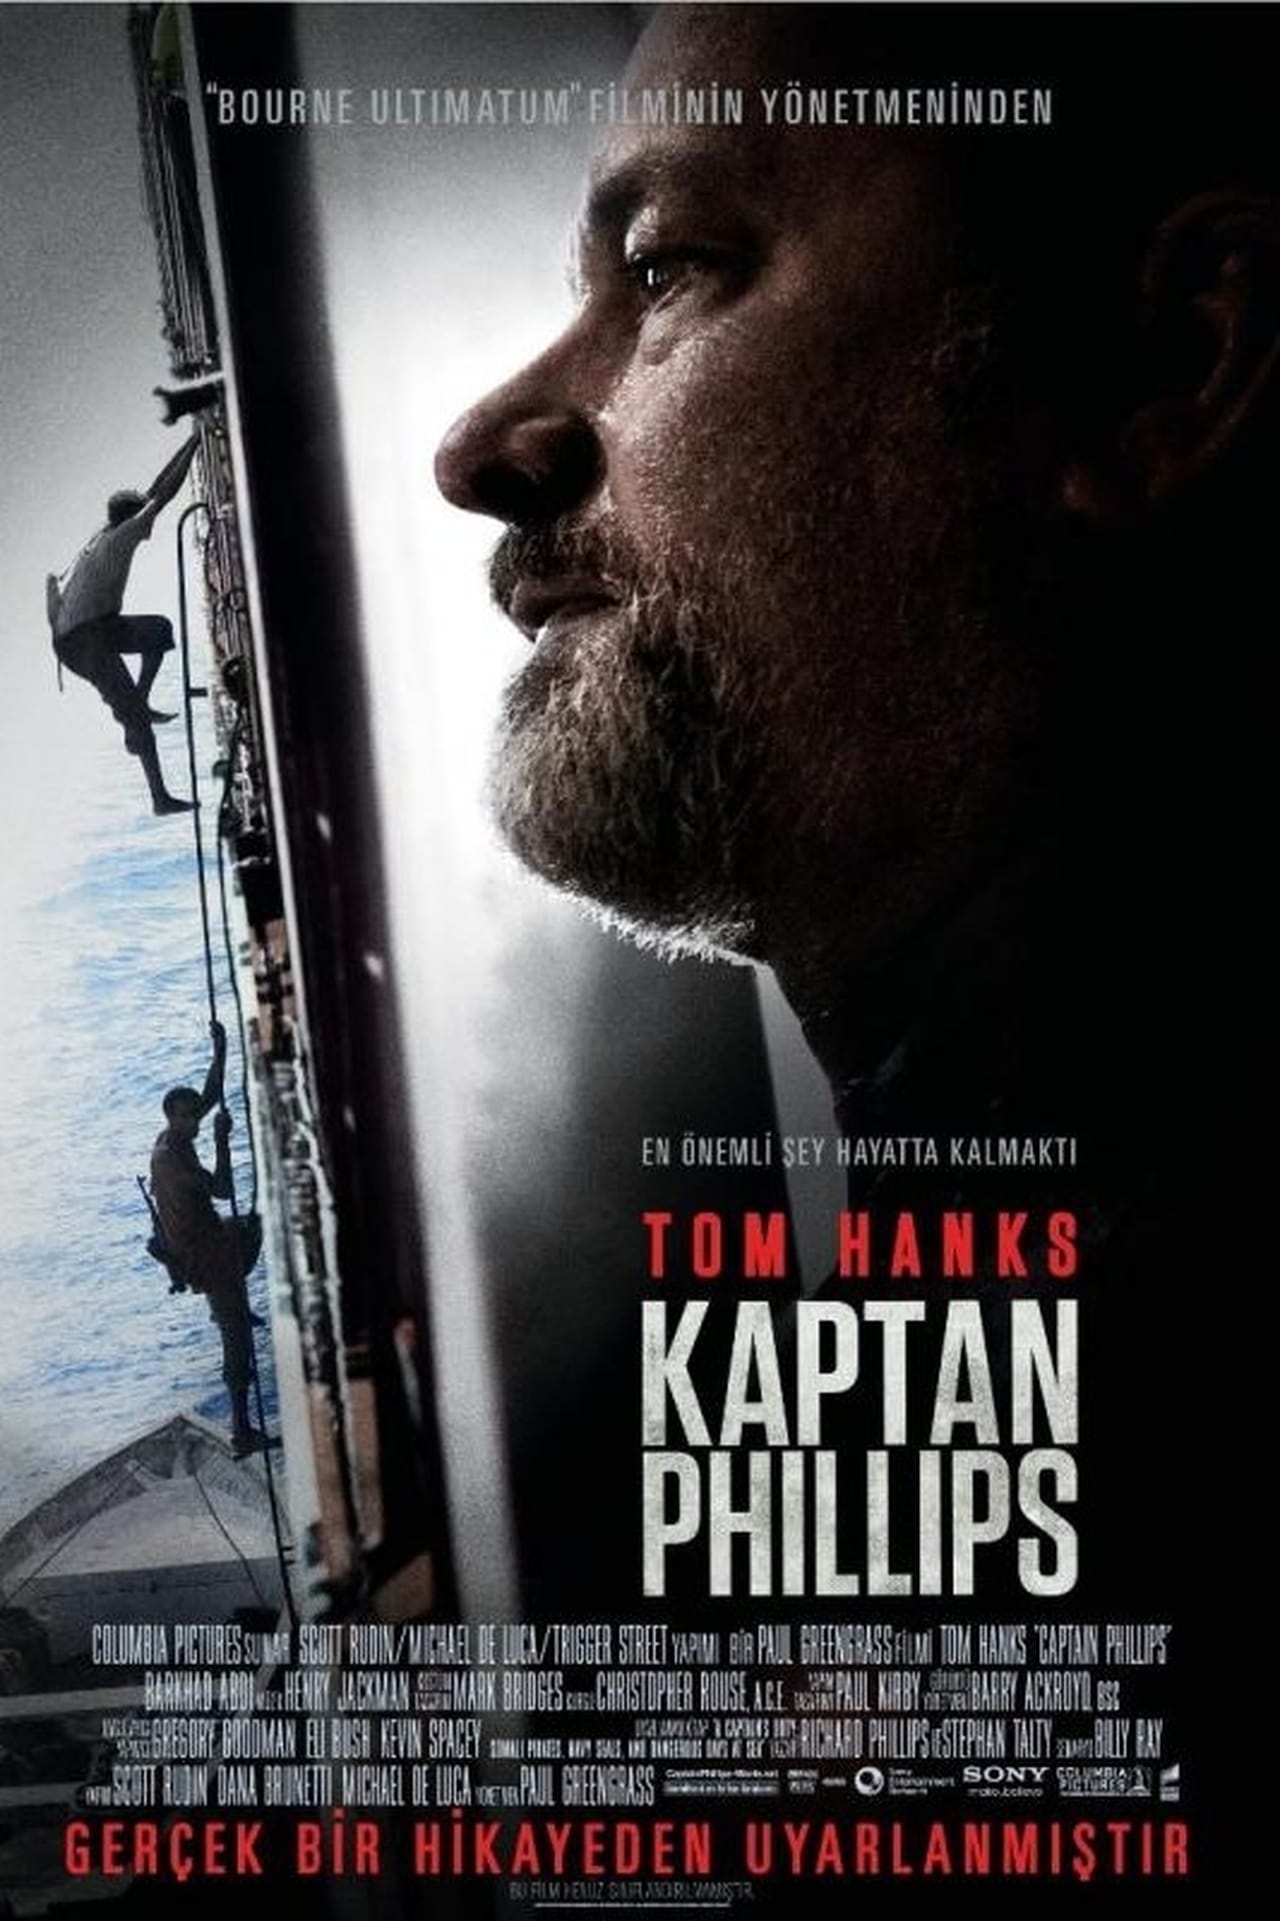 Captain Phillips (2013) 640Kbps 23.976Fps 48Khz 5.1Ch DD+ NF E-AC3 Turkish Audio TAC